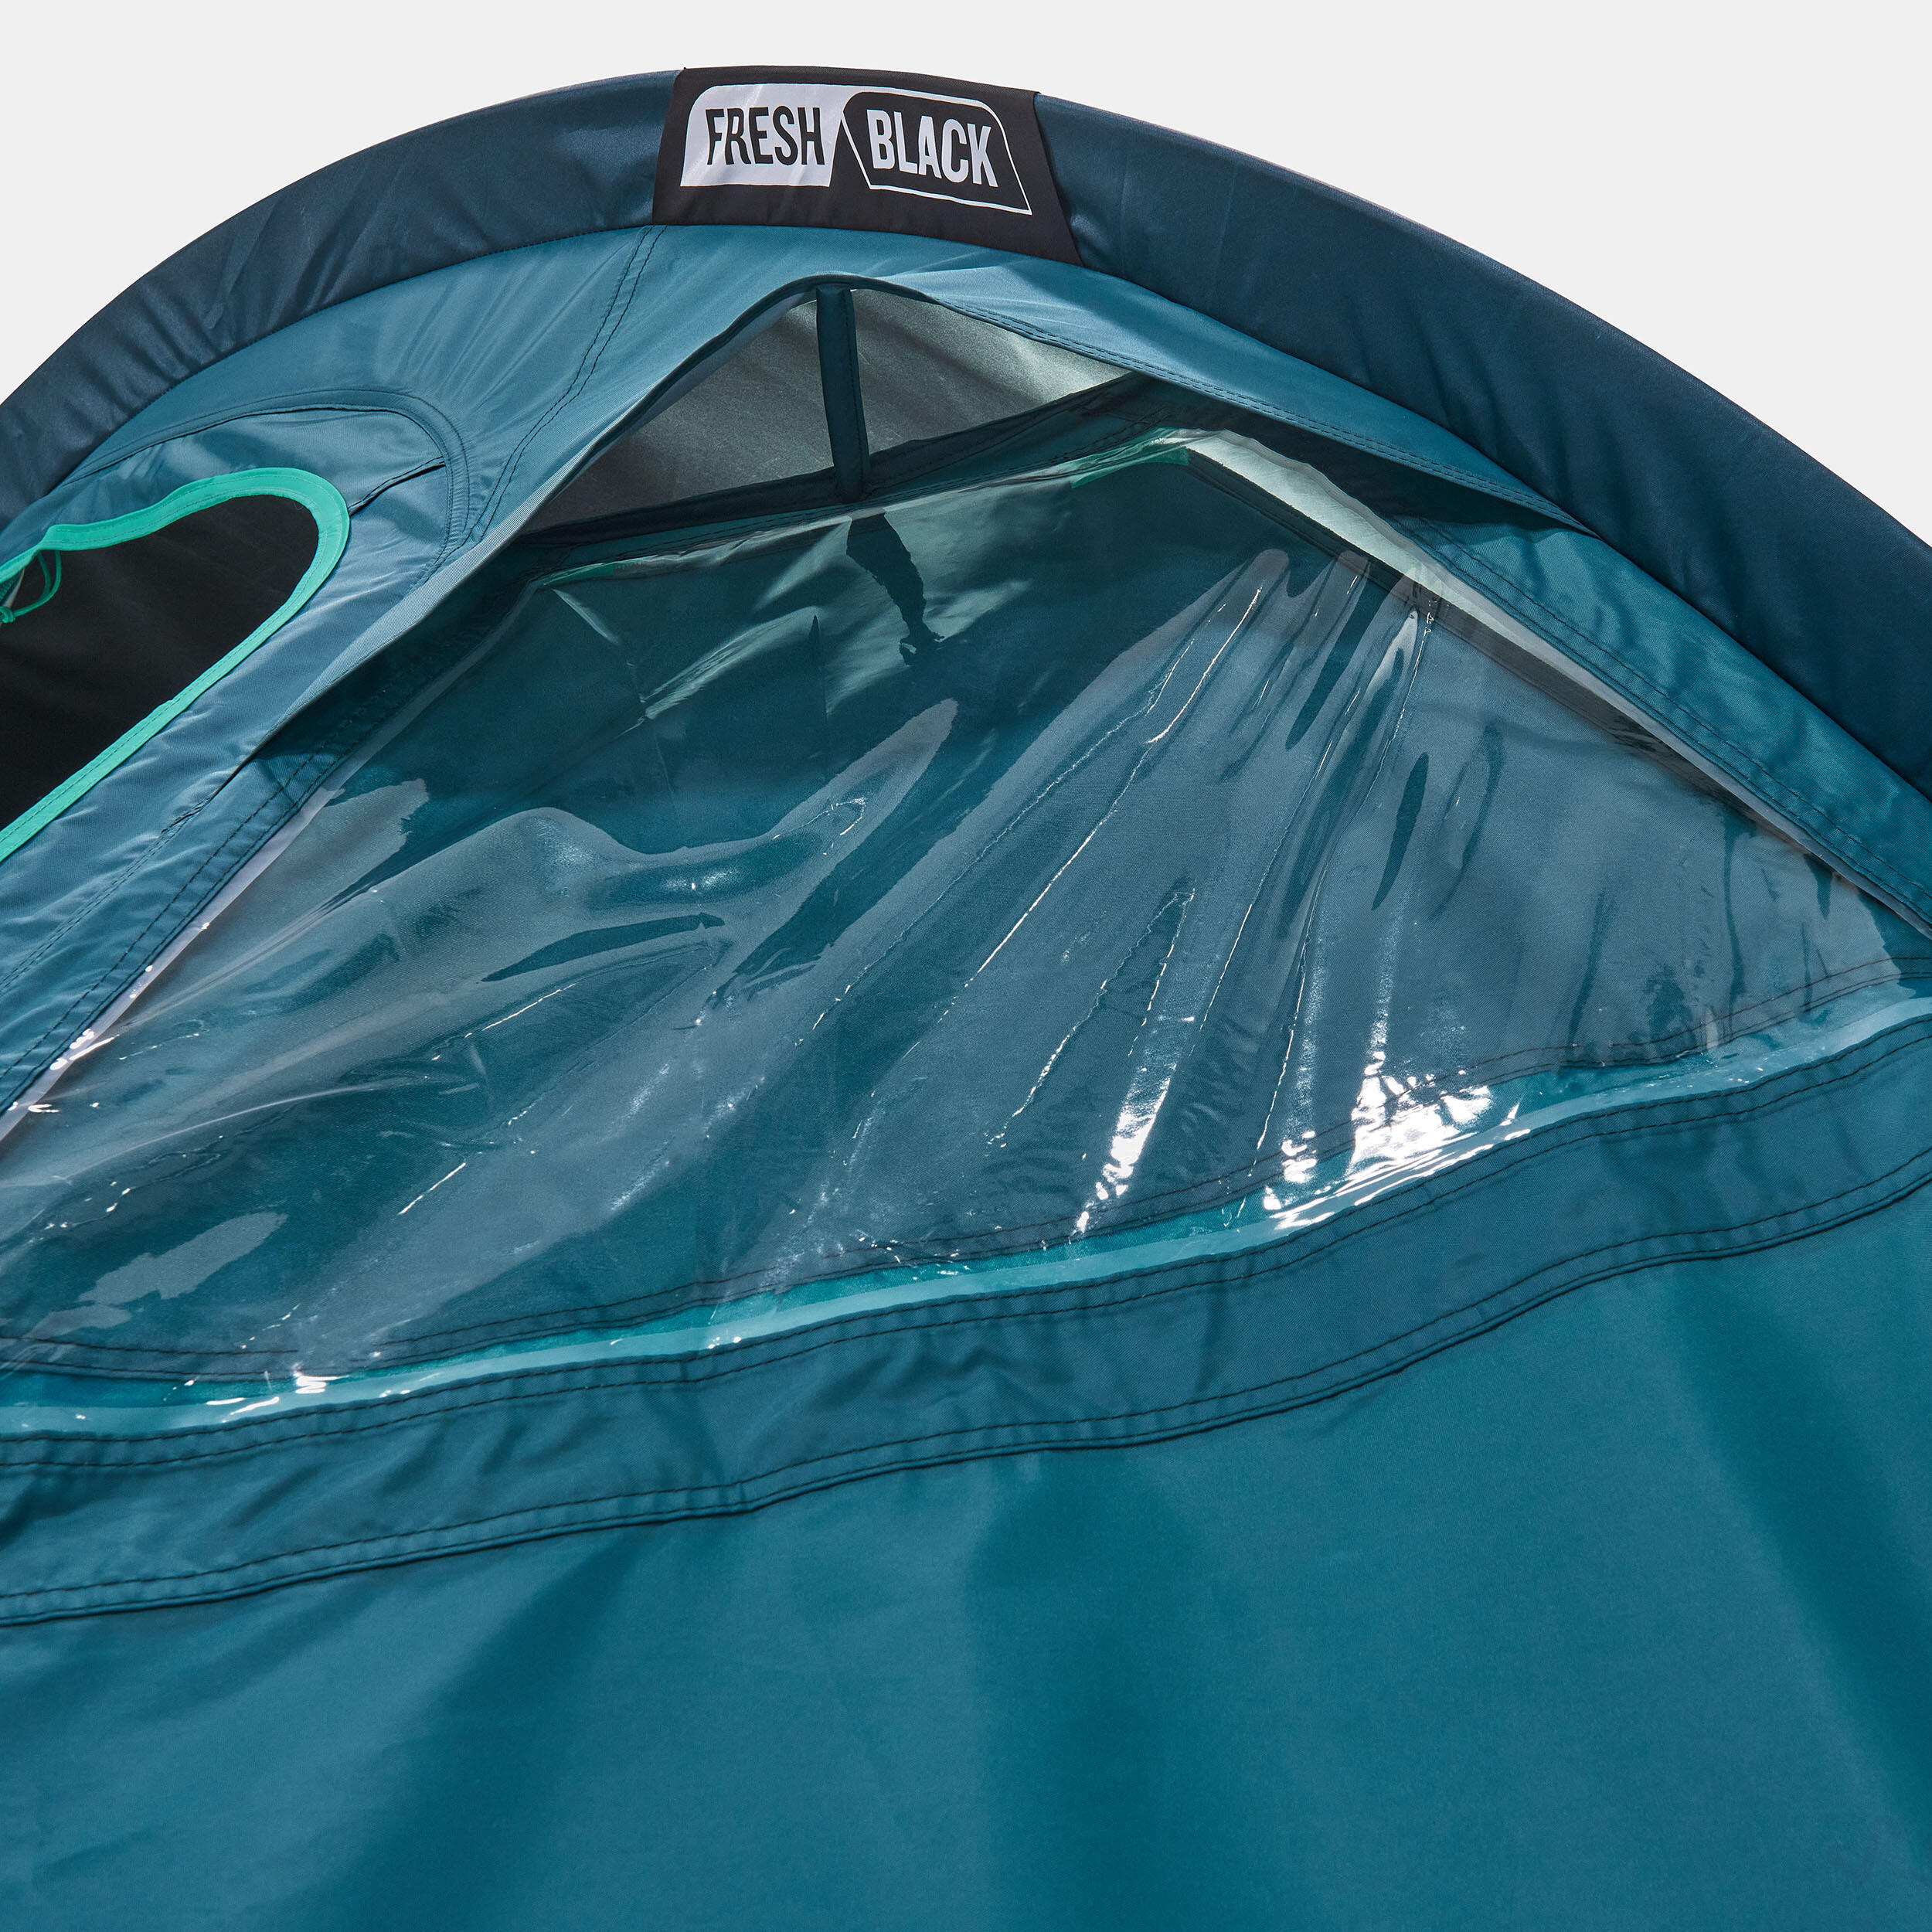 Camping tent MH100 XL - 3-P - Fresh&Black 14/24